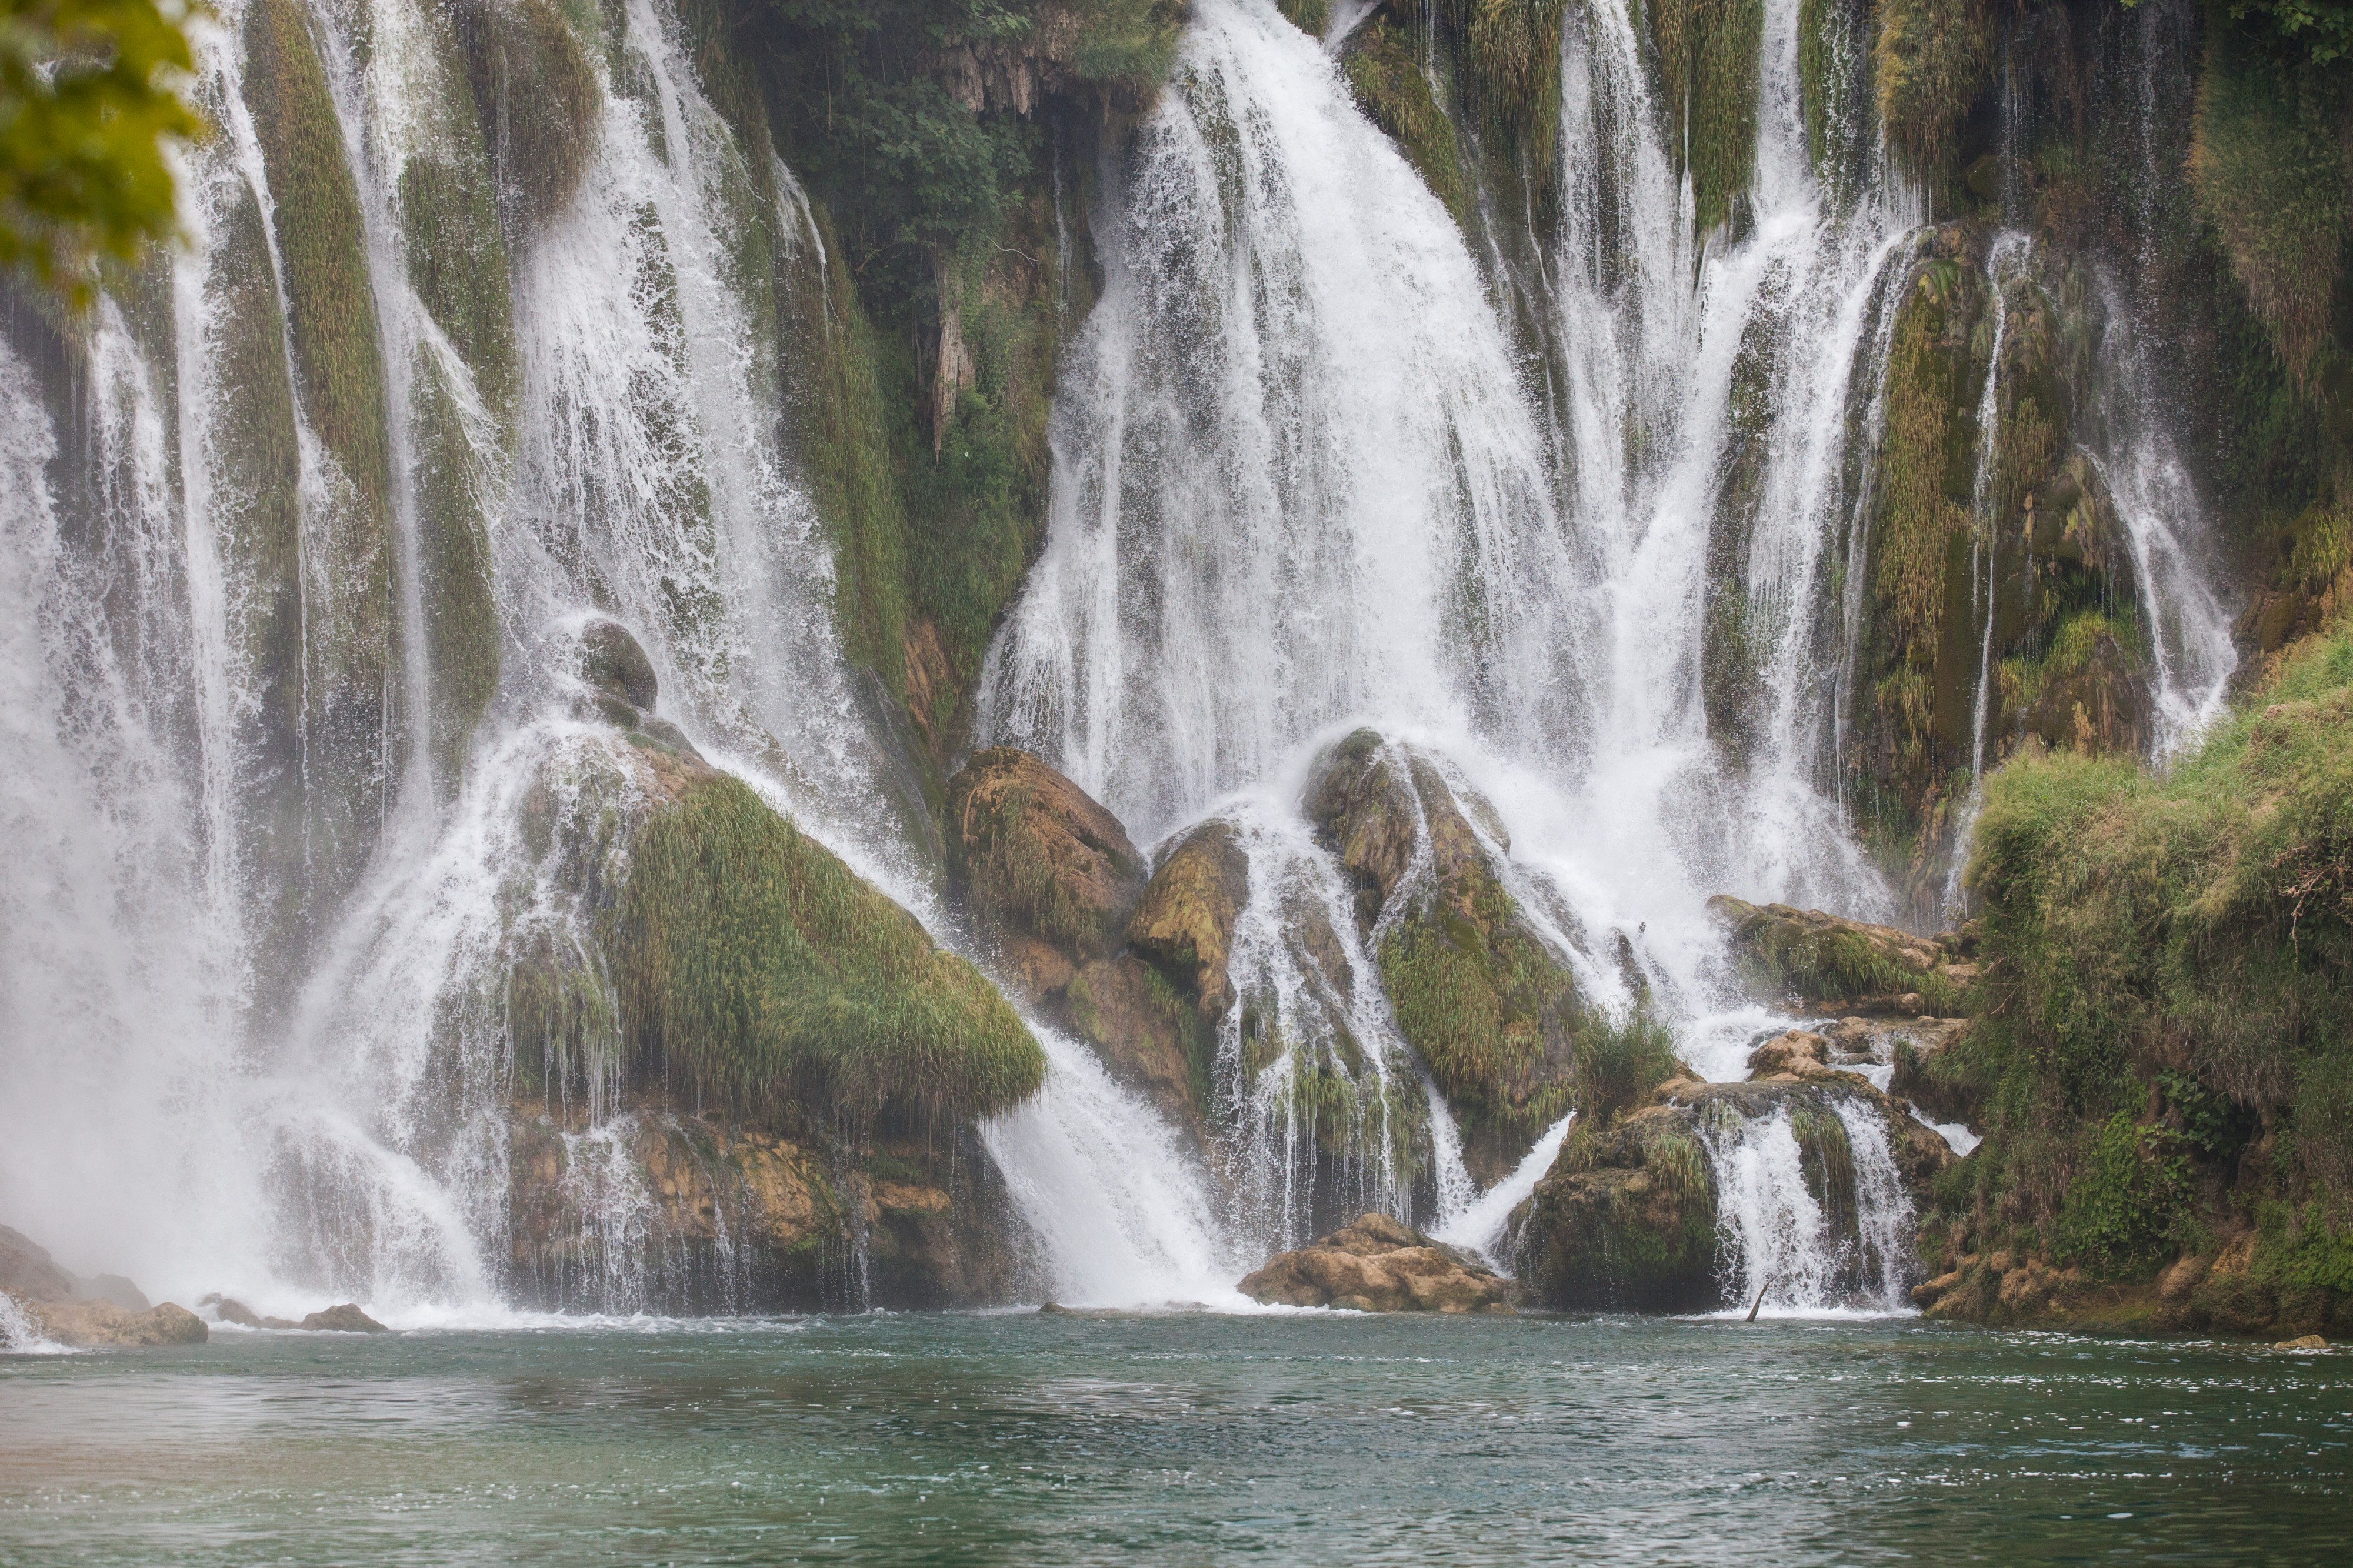 Kravice waterfall near Medjugorje, Bosnia, in July 2014, picture 1